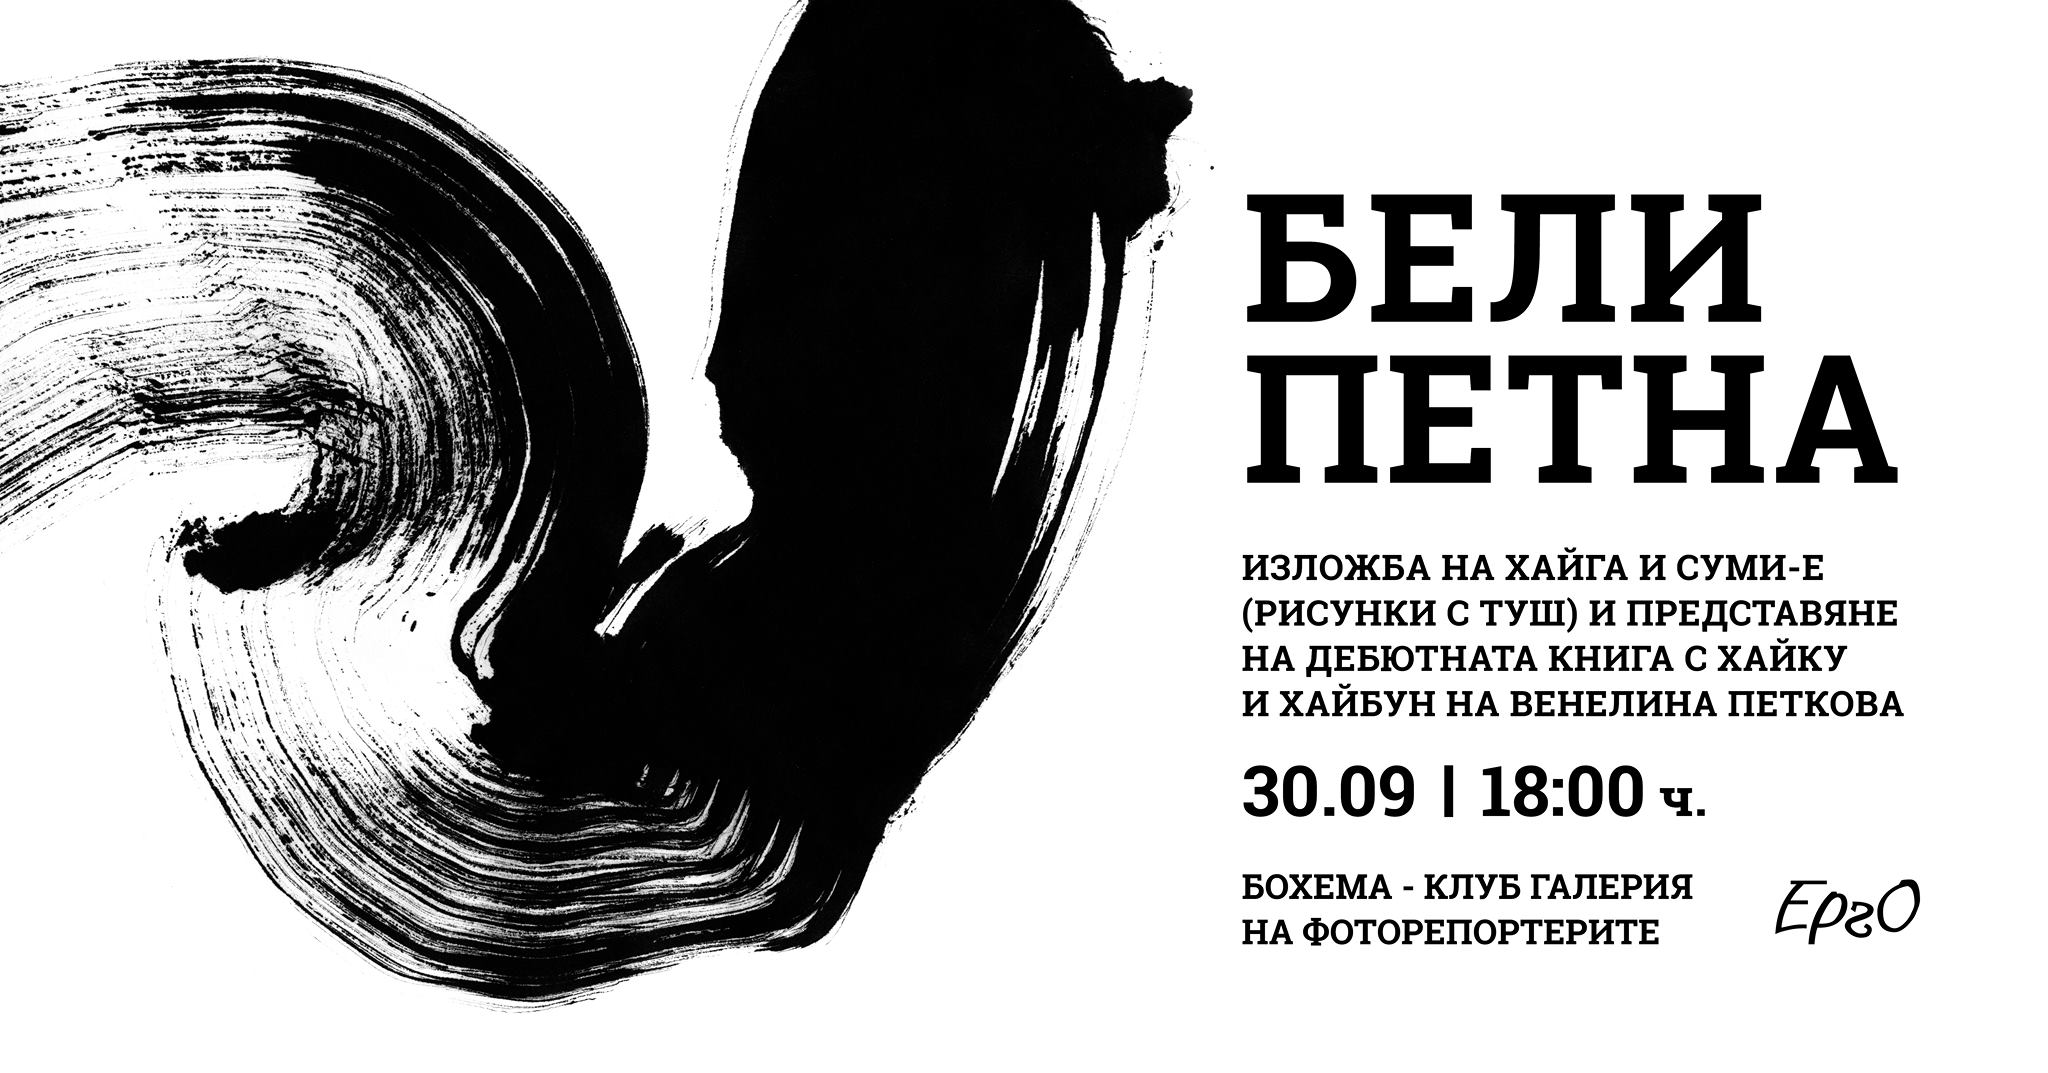 Бели петна - изложба и литературен хайку дебют